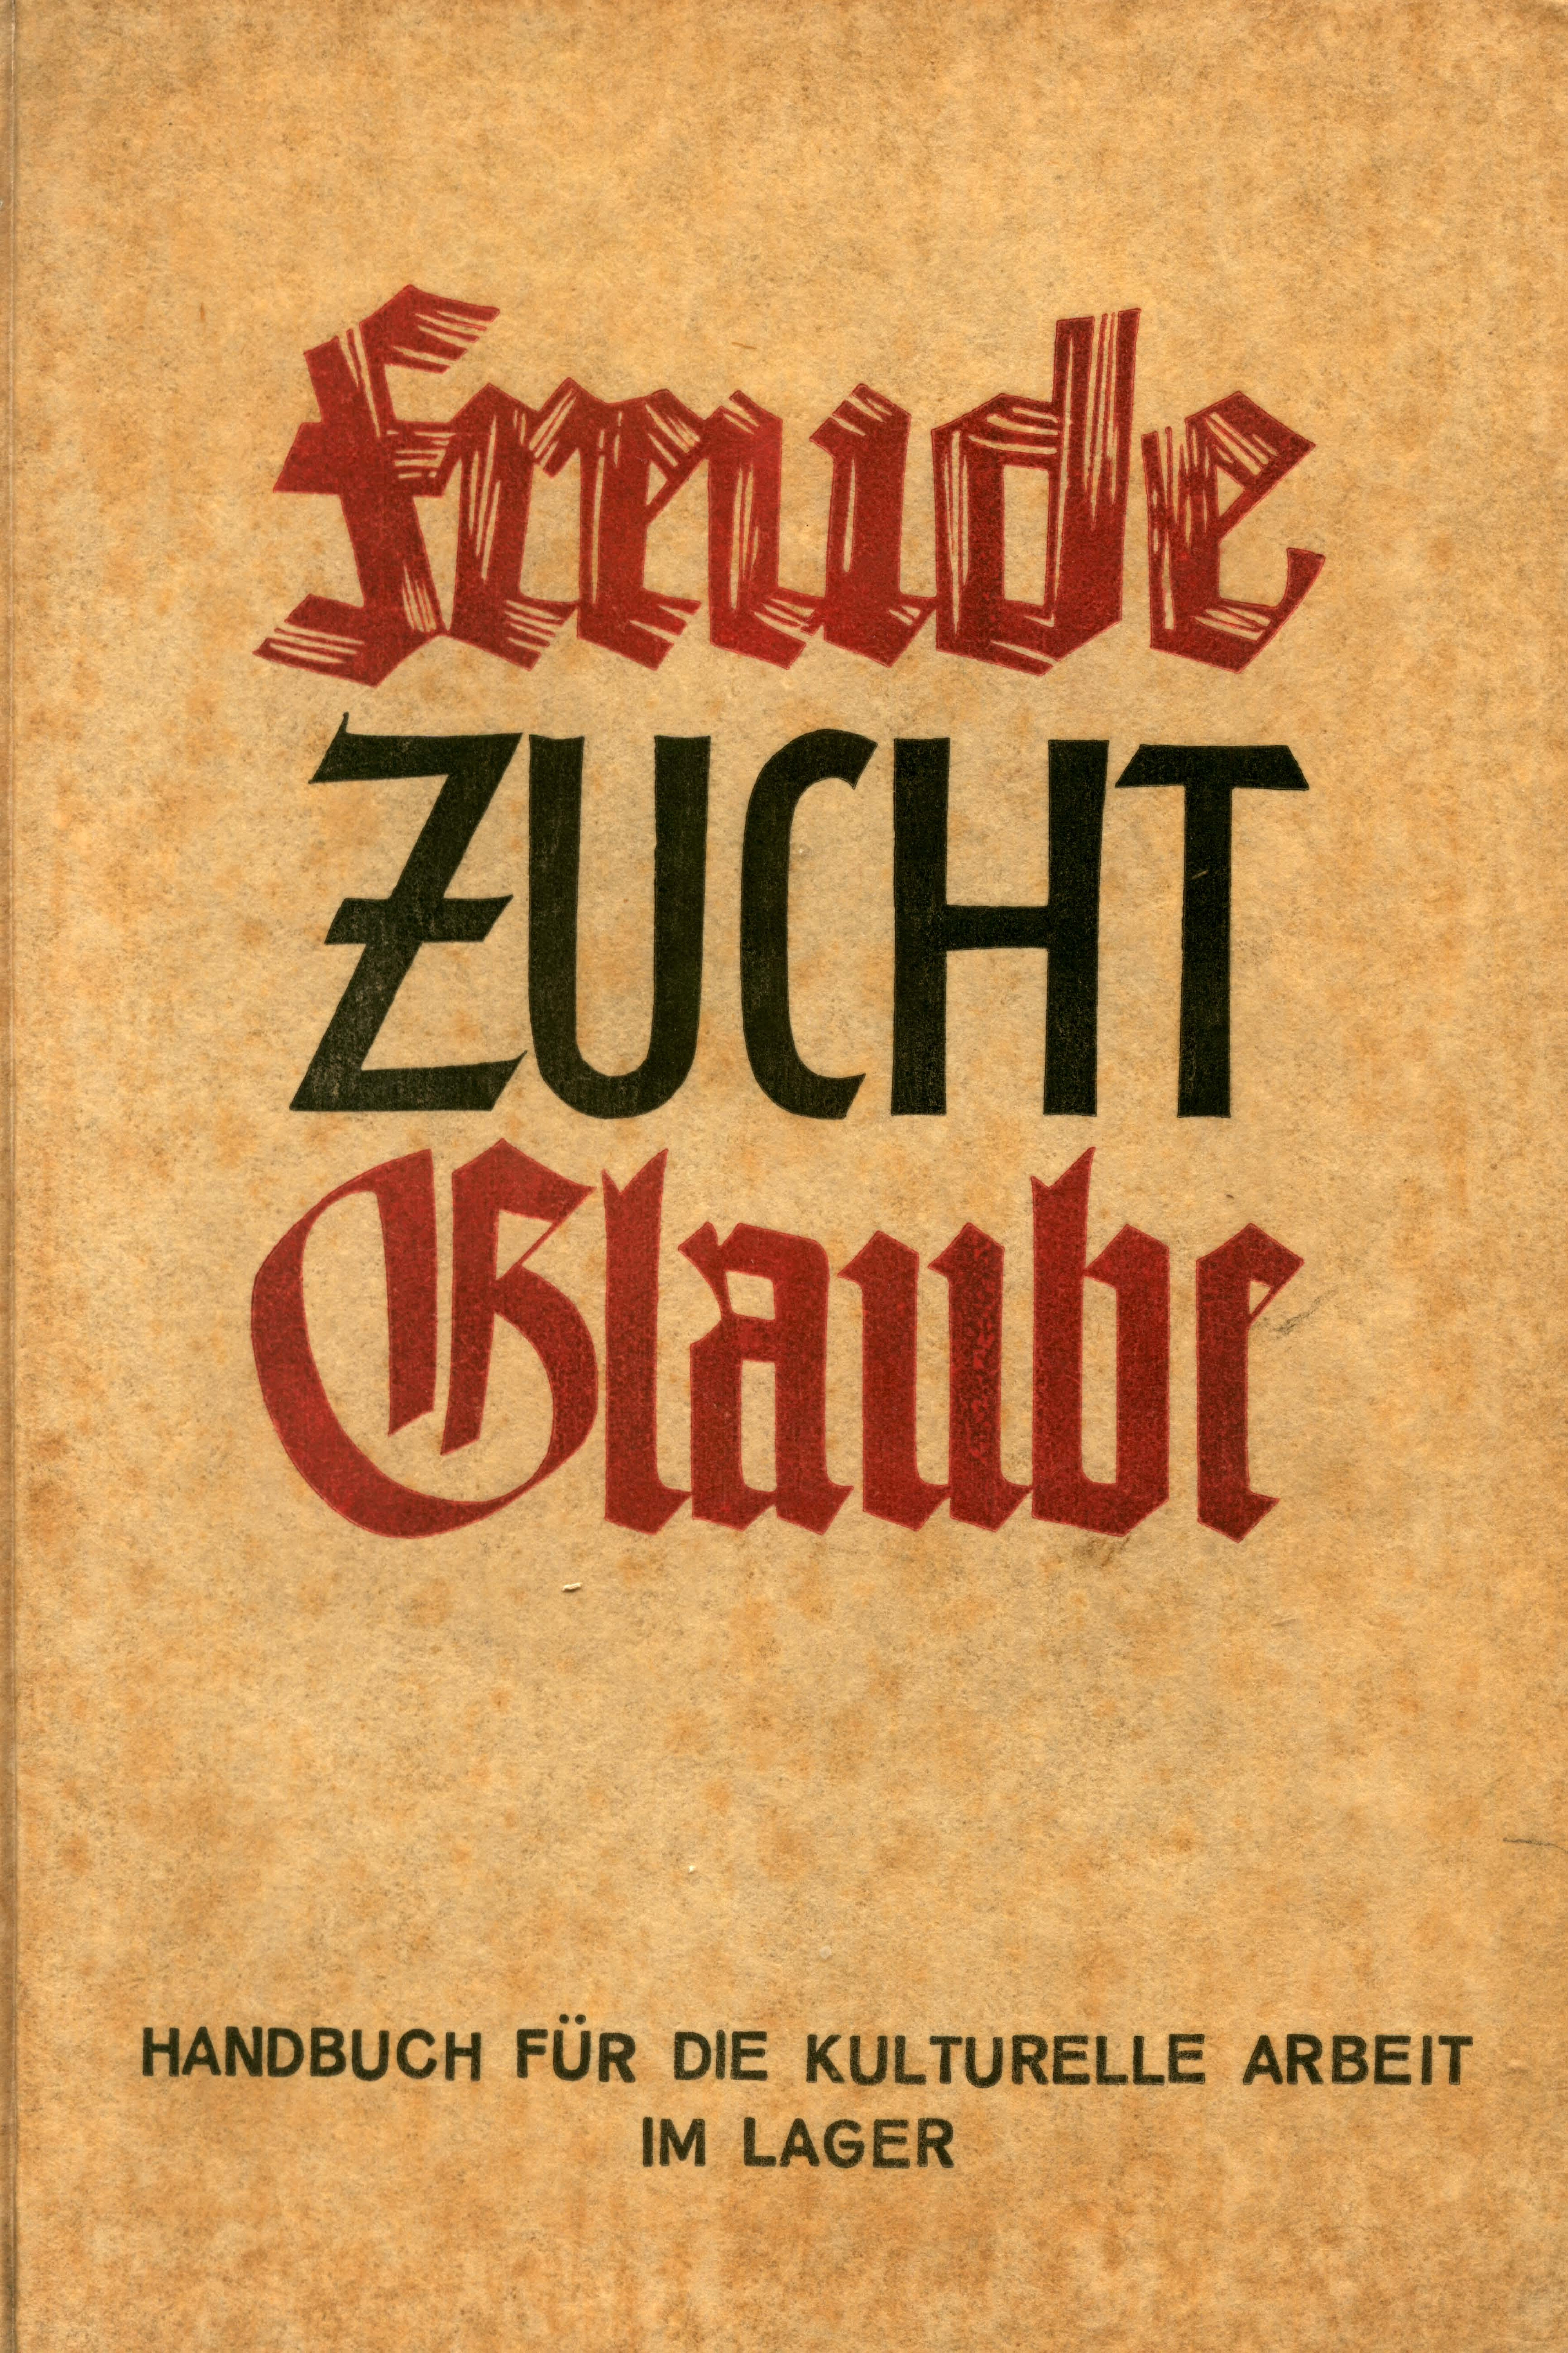 Freude, Zucht, Glaube Handbuch für die kulturelle Arbeit im Lager (1937)